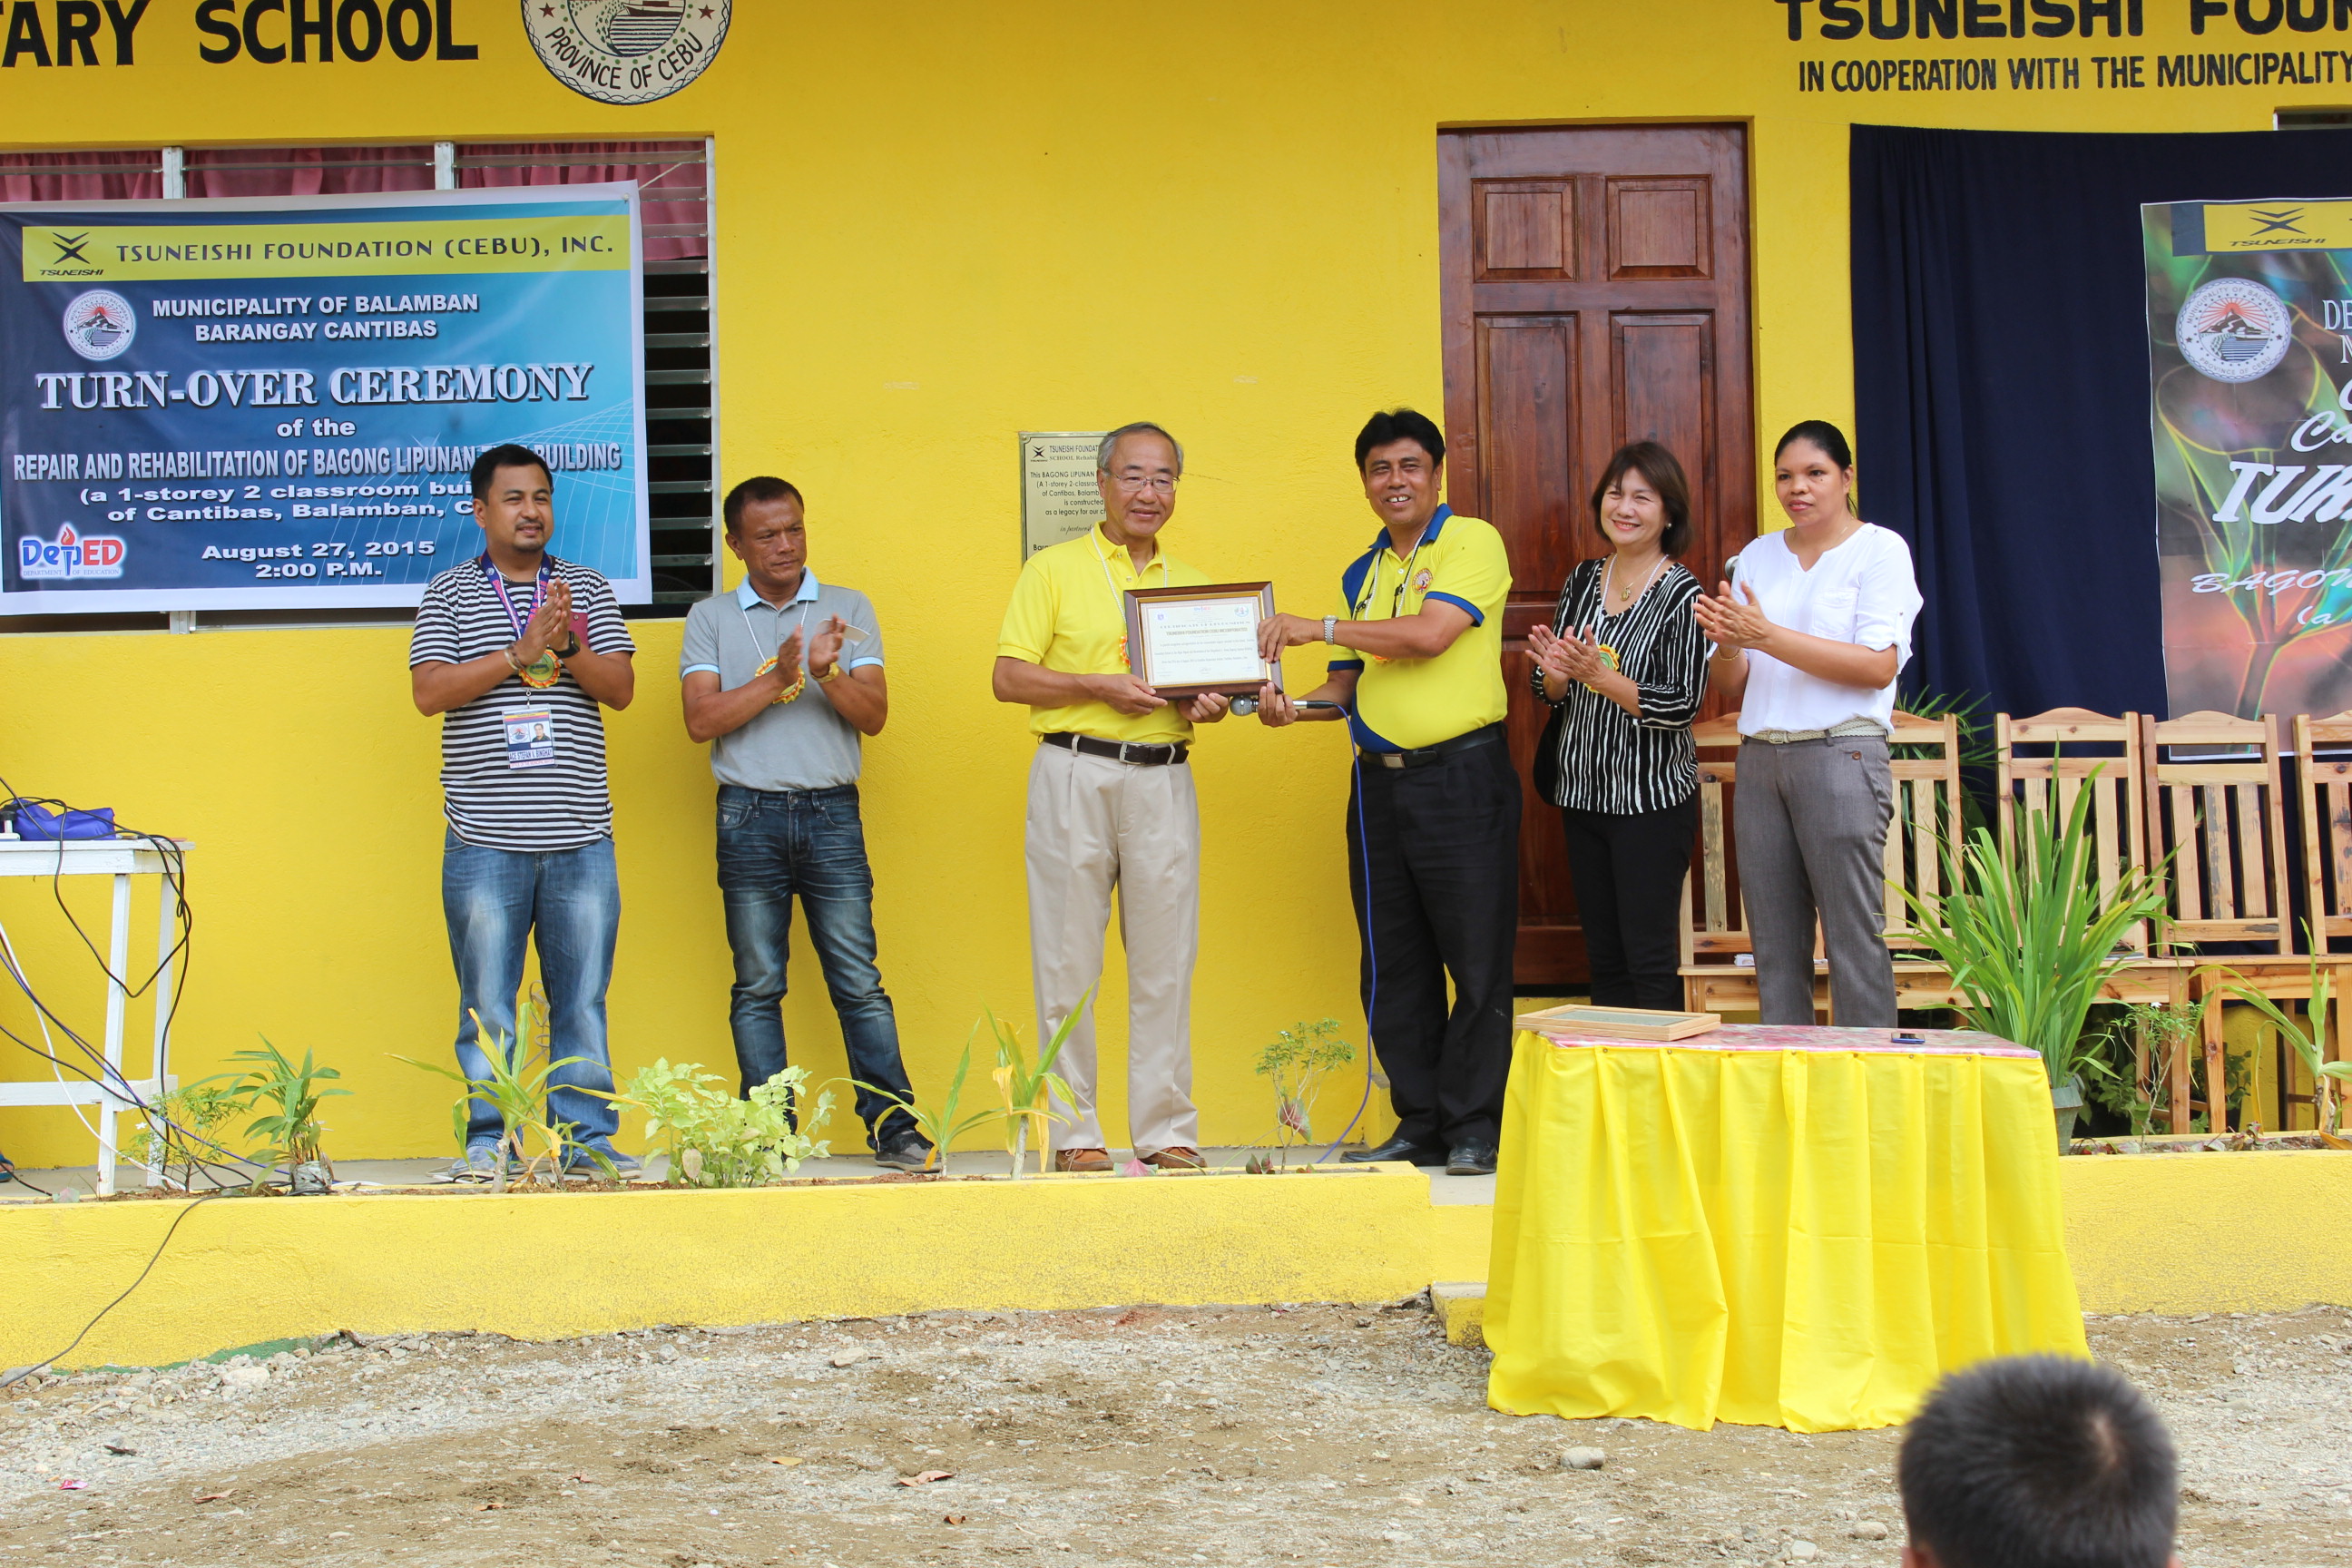 フィリピンの小学校と地域医療施設の改修を支援　－　ツネイシセブ財団